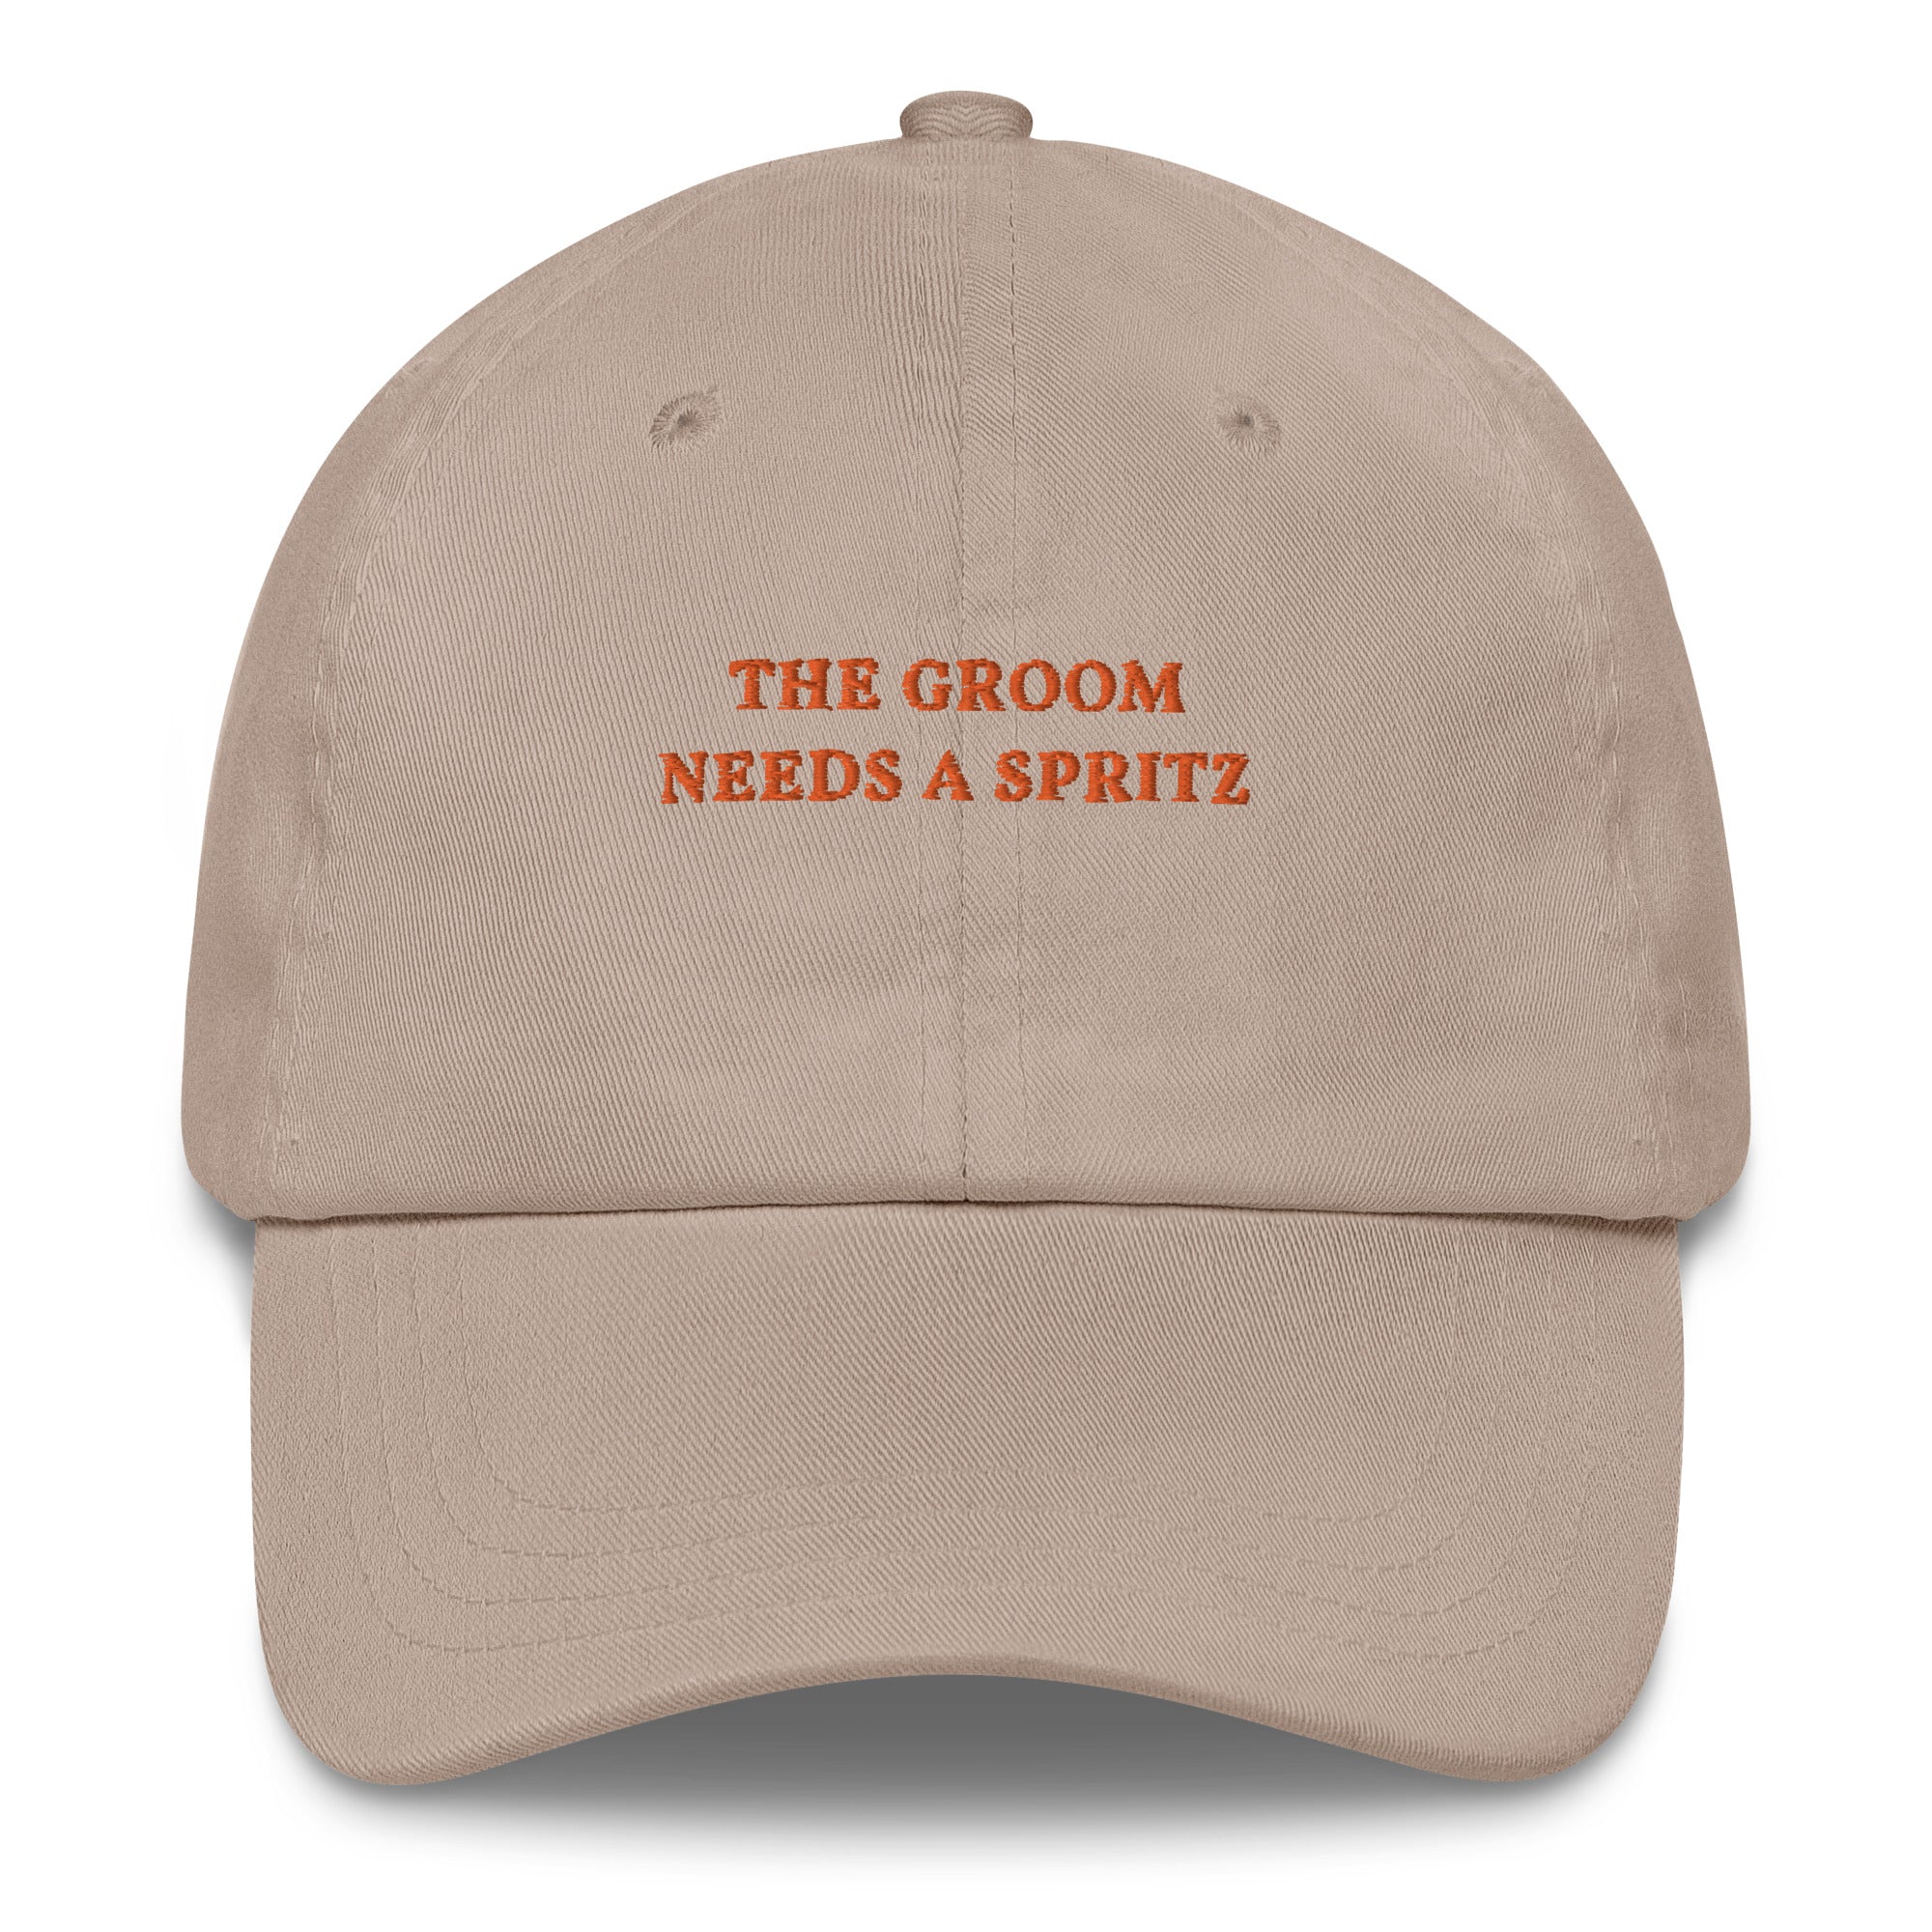 The Groom needs a Spritz - Cap